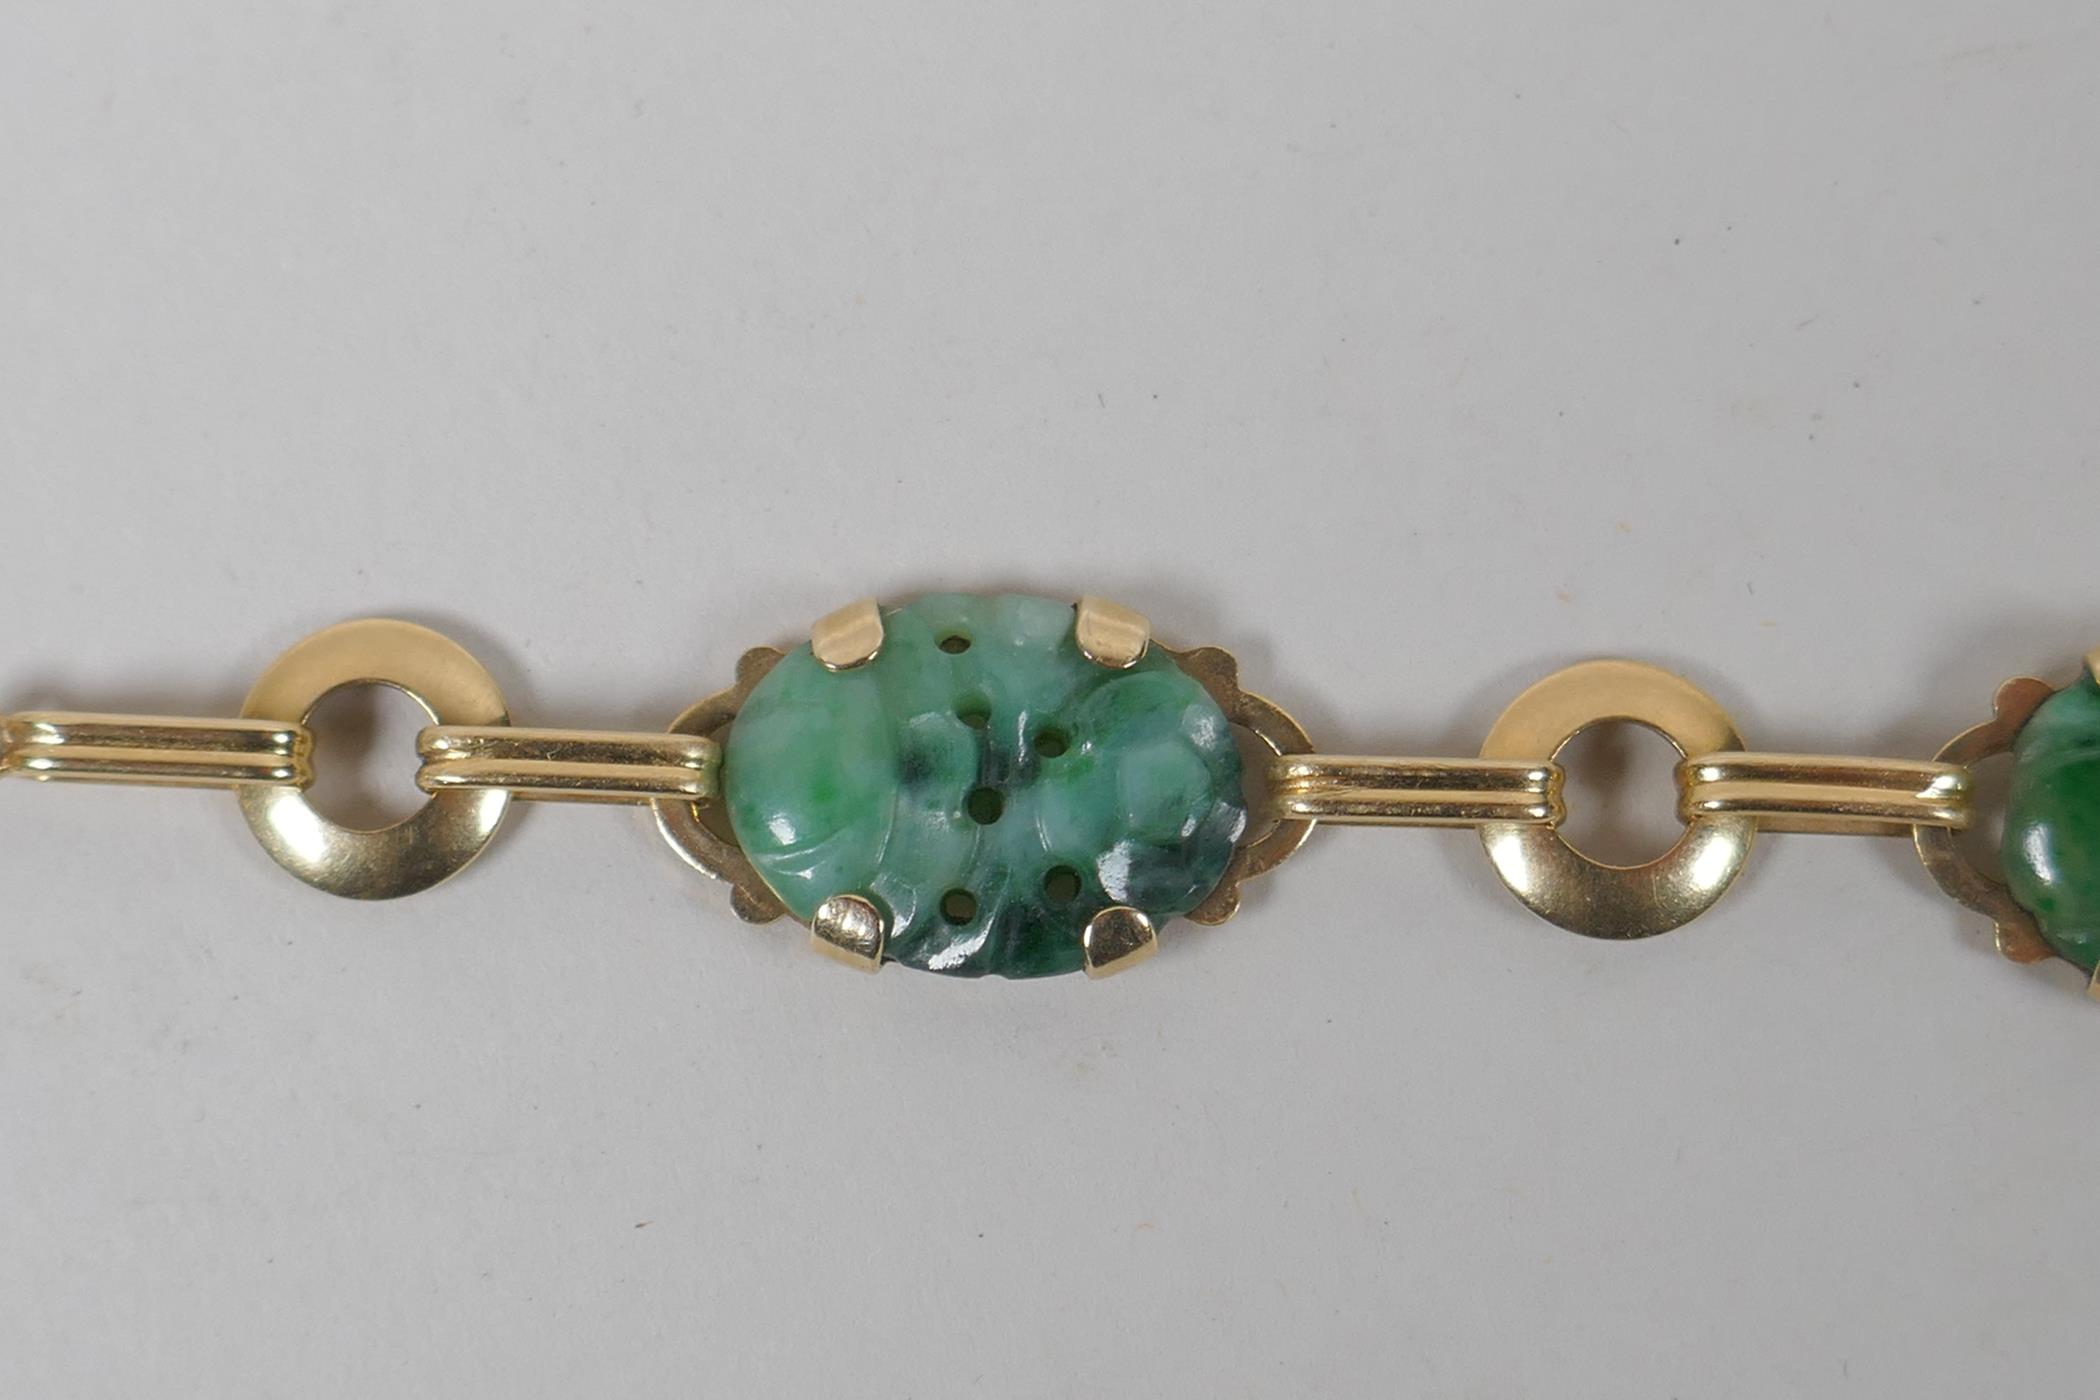 A 14ct gold and mottled jade bracelet, 18cm long - Image 2 of 5